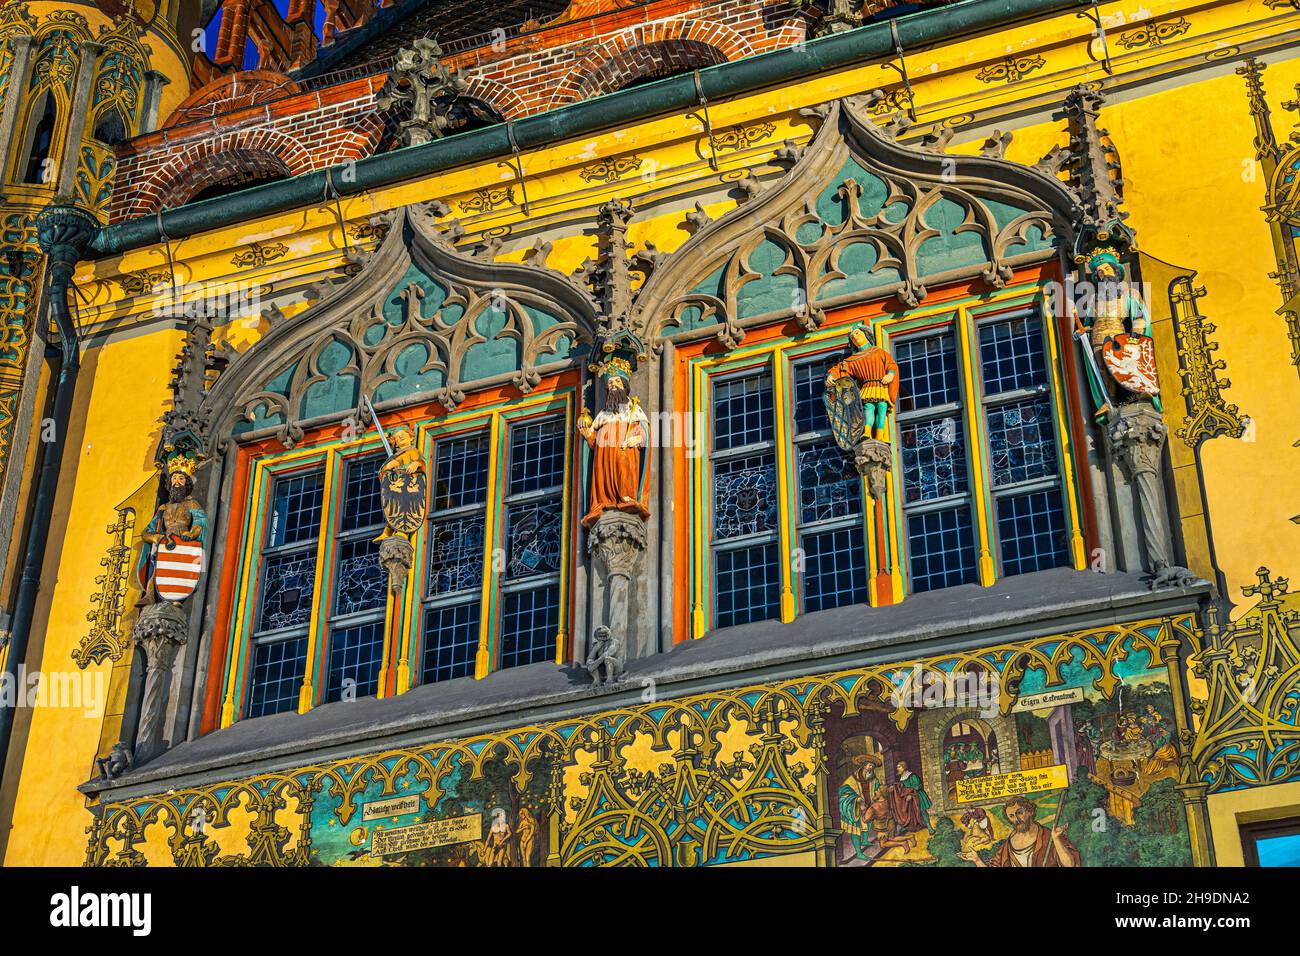 Finestre riccamente decorate sulla facciata laterale affrescata del municipio rinascimentale di Ulm. Ulm, Tubingen, regione di Donau-Iller, Germania, Europa Foto Stock